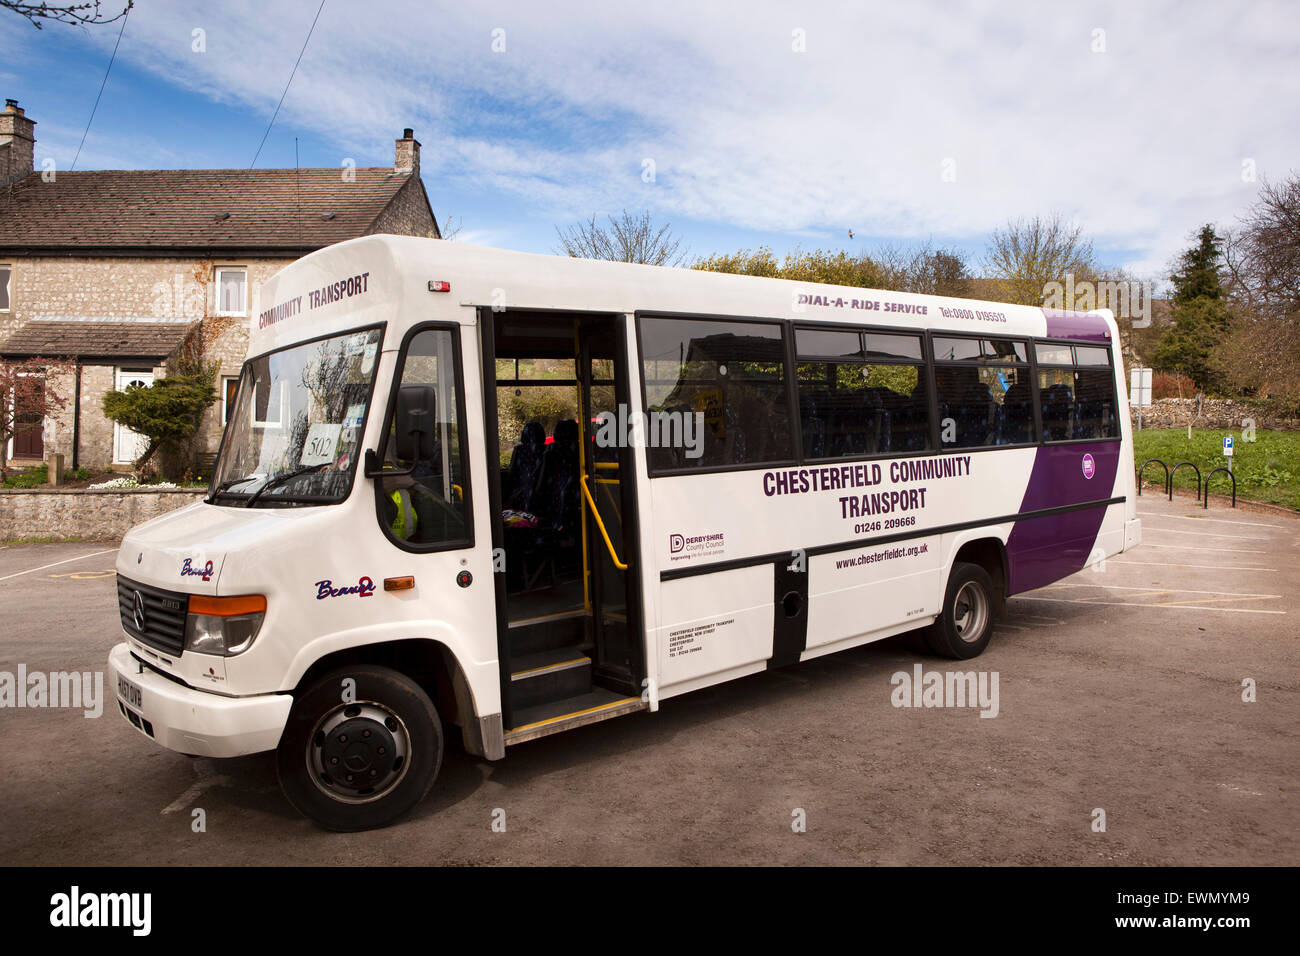 Royaume-uni, Angleterre, Bakewell, Derbyshire, village de Over Haddon, composez un tour bus des transports de la communauté Banque D'Images